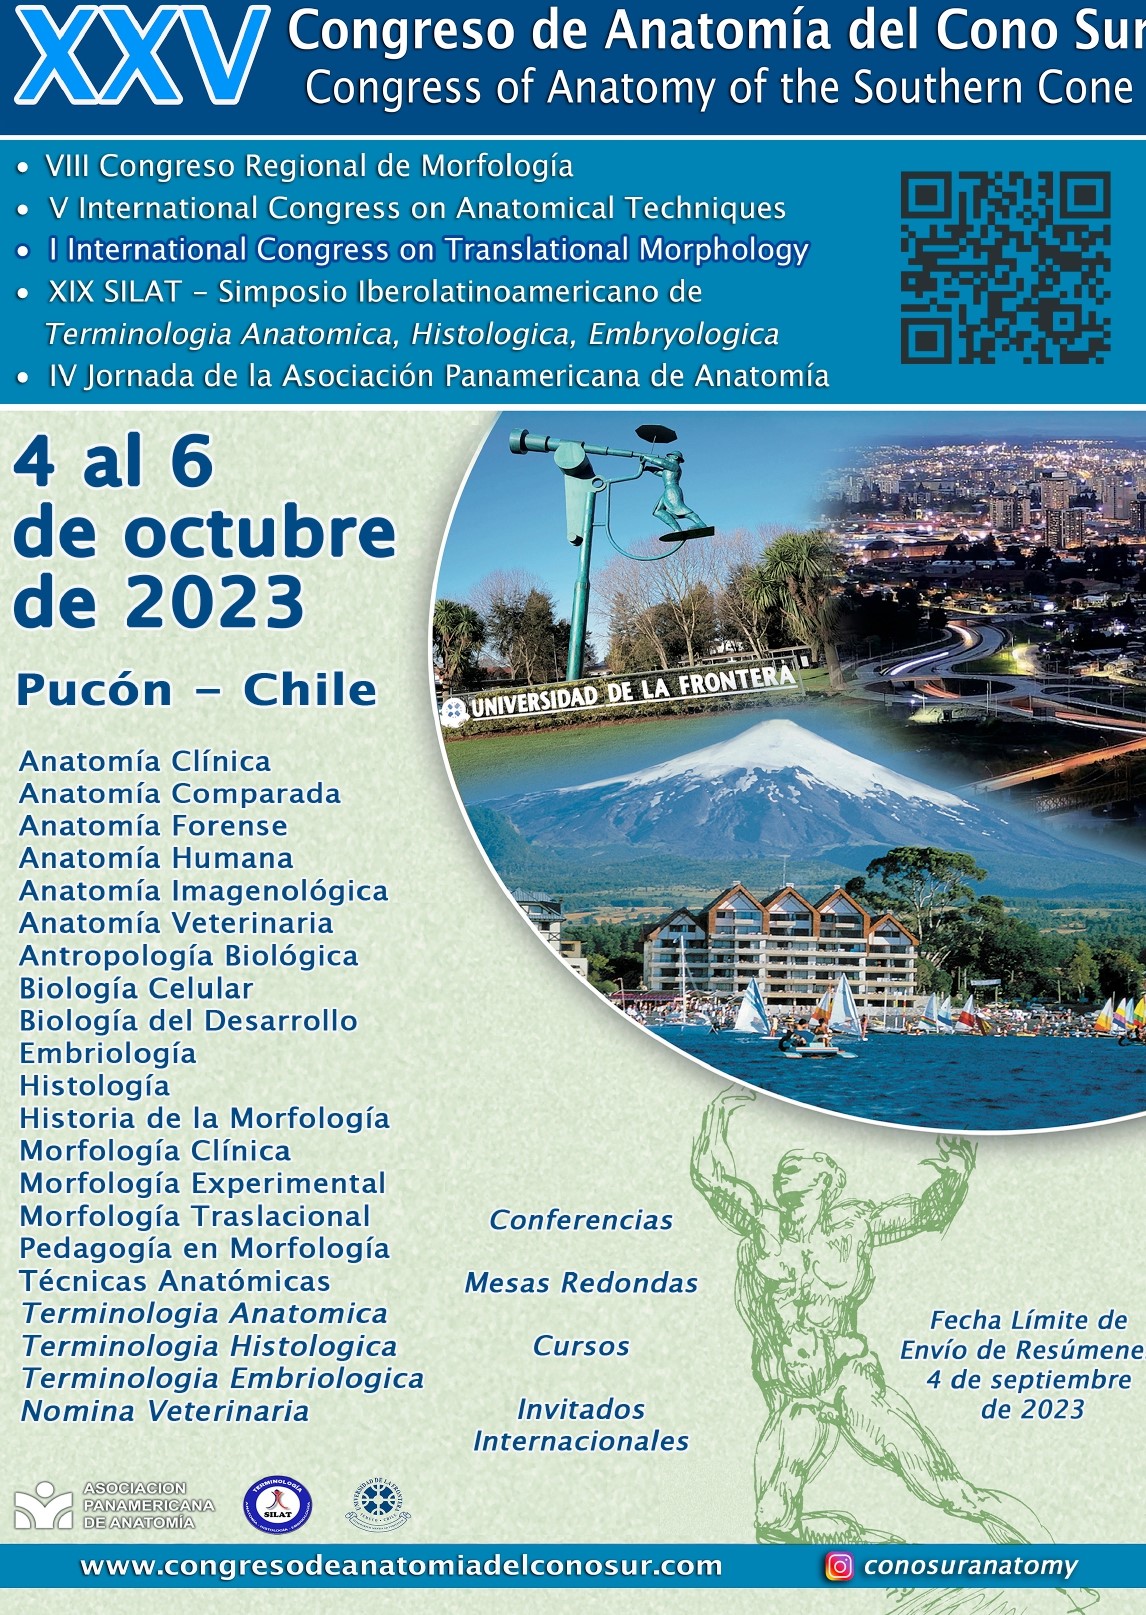 XXV CONGRESO DE ANATOMÍA DEL CONO SUR - 4 al 6 de octubre de 2023